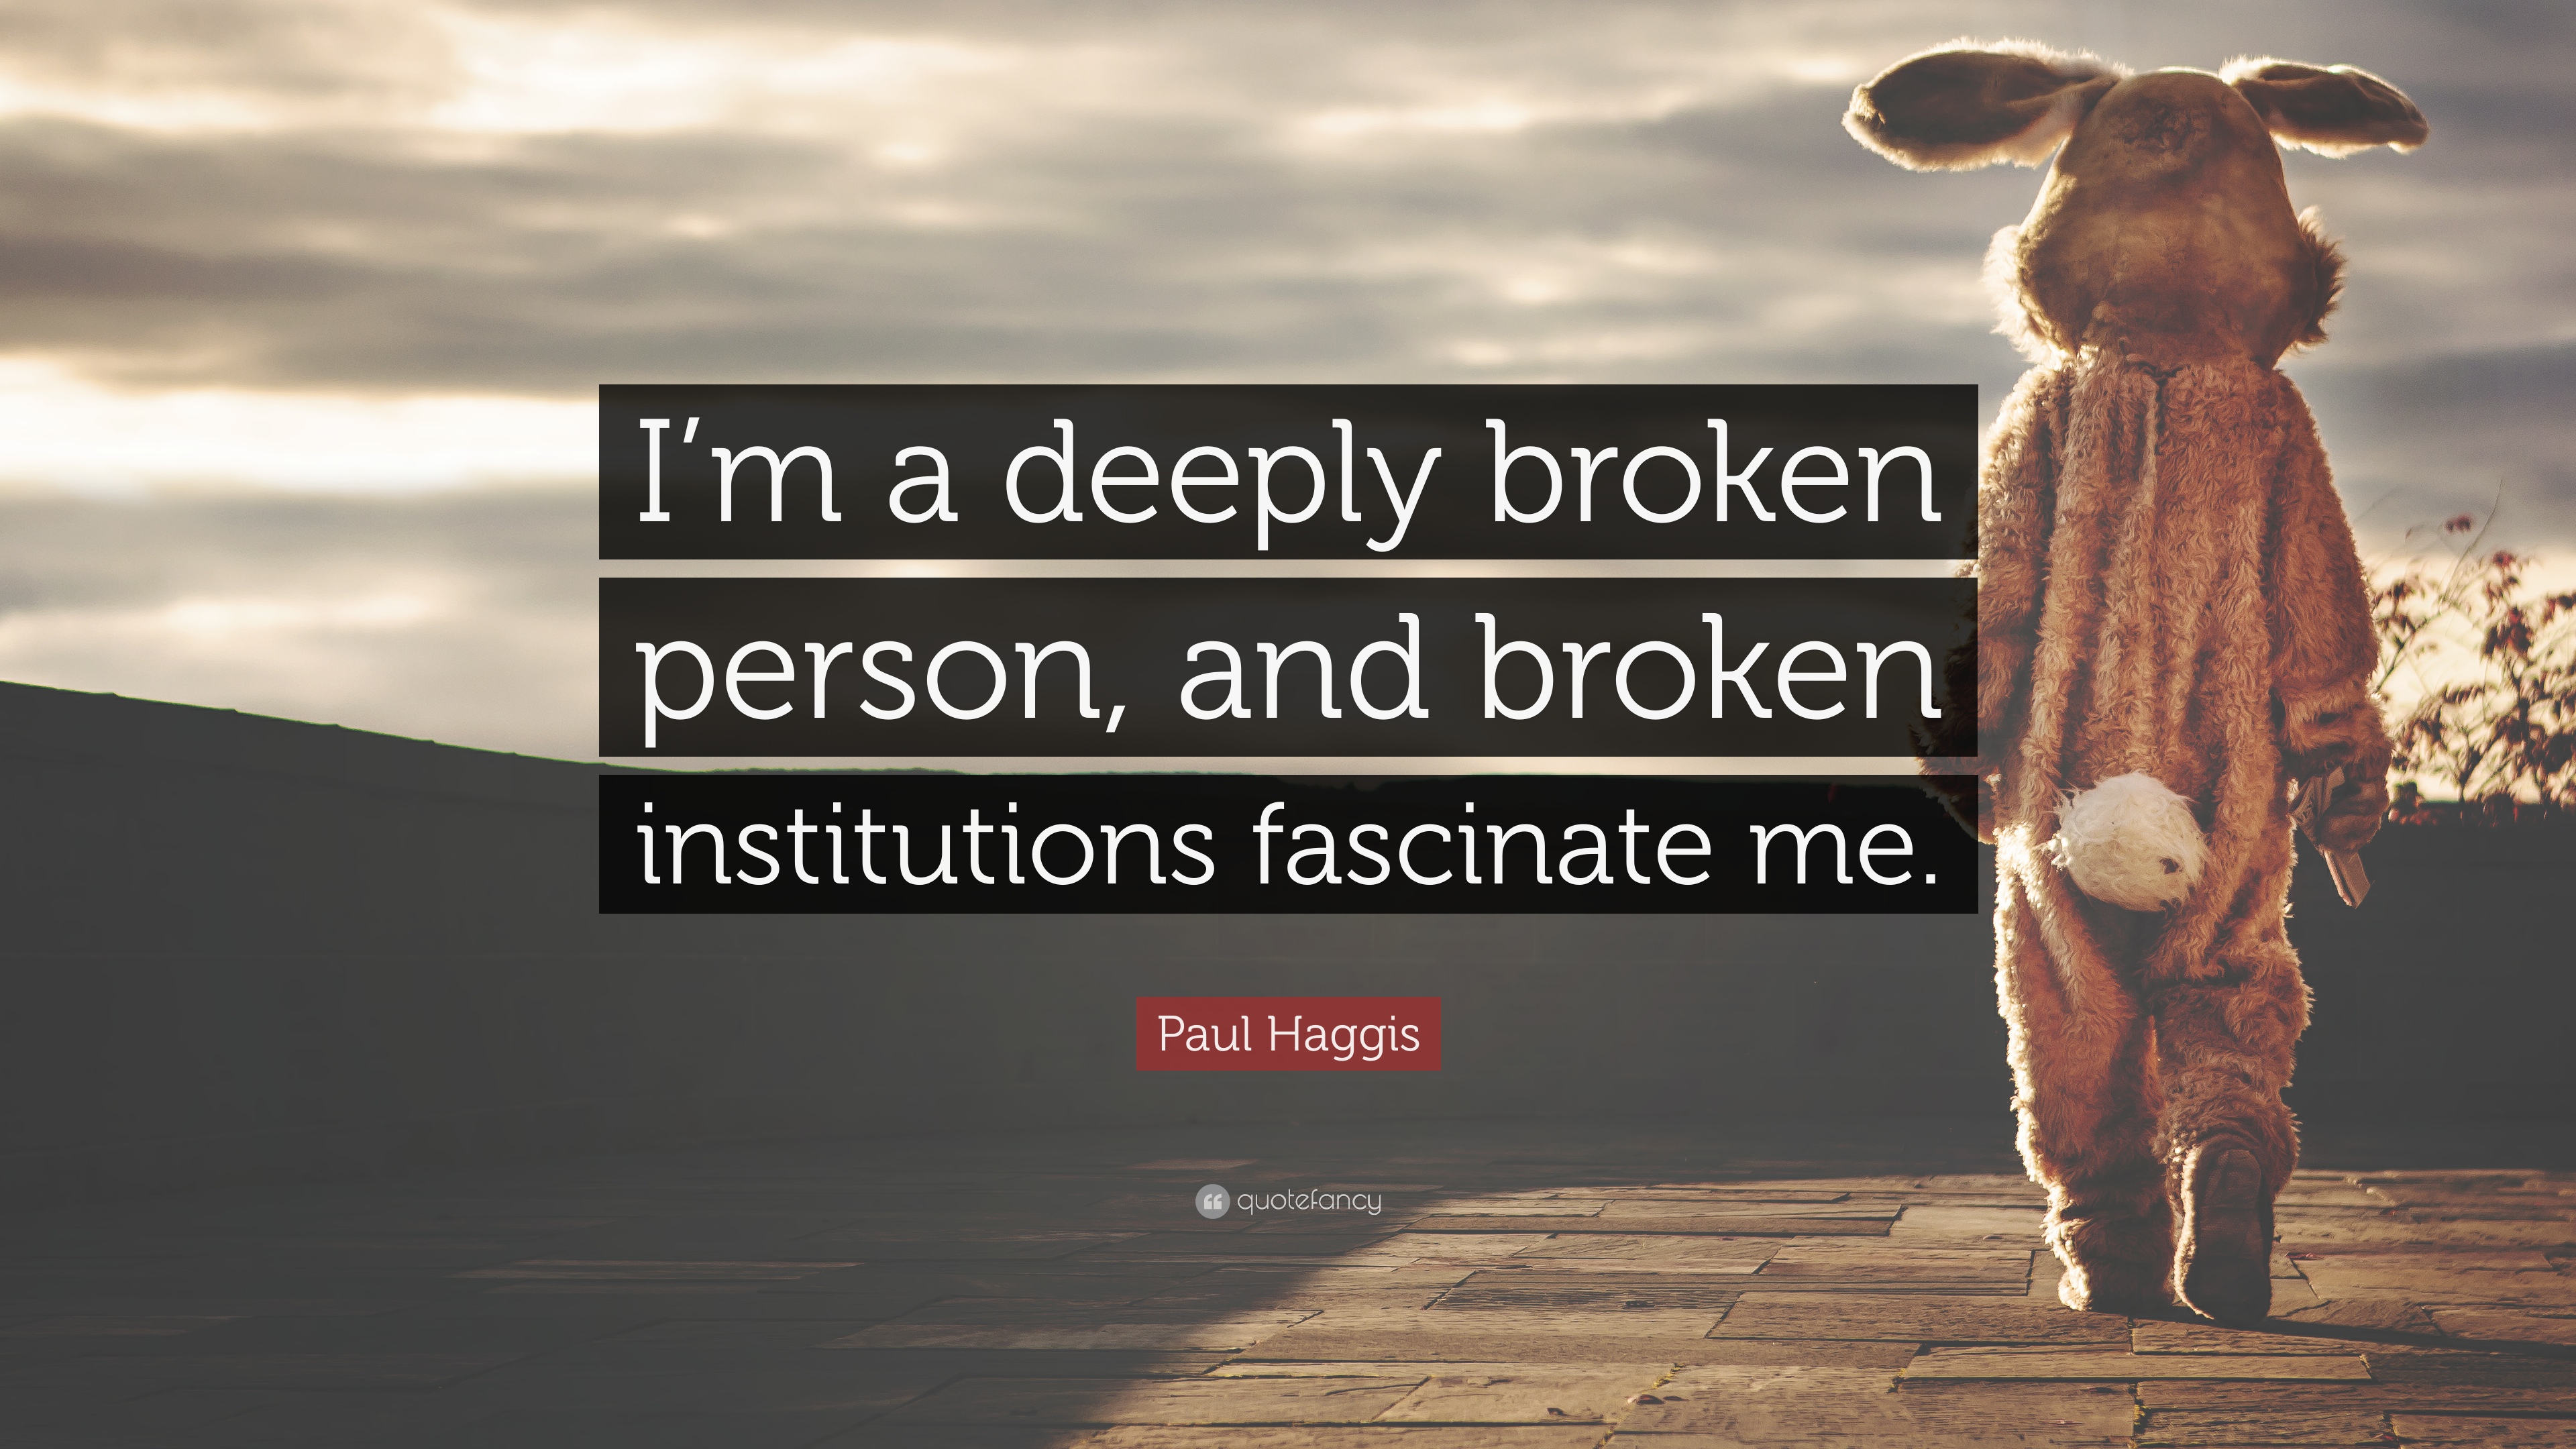 Paul Haggis Quote: “I'm a deeply broken person, and broken